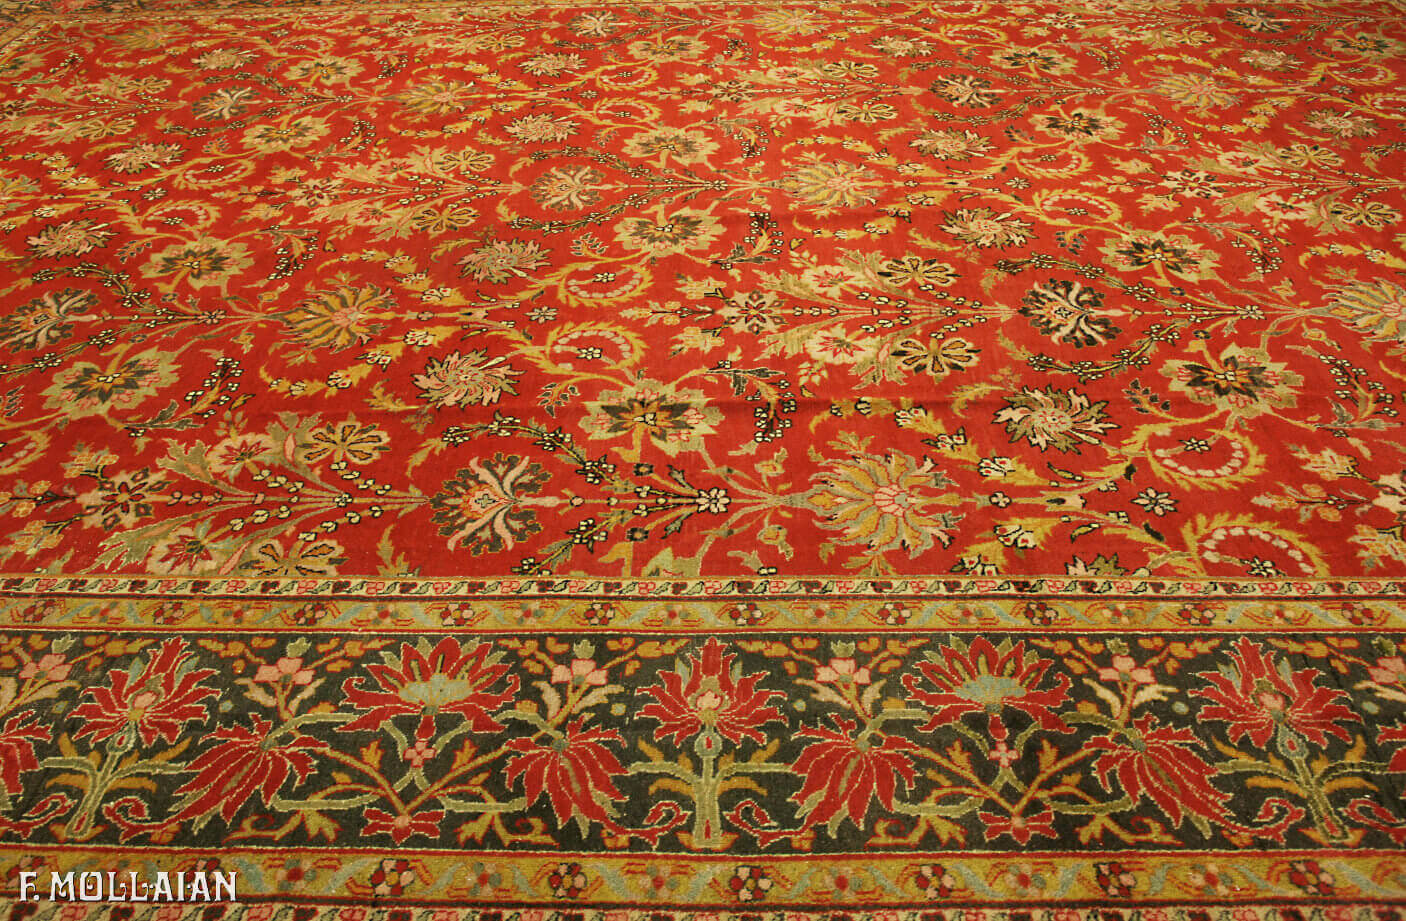 Antique Persian Mahal Carpet n°:39706704